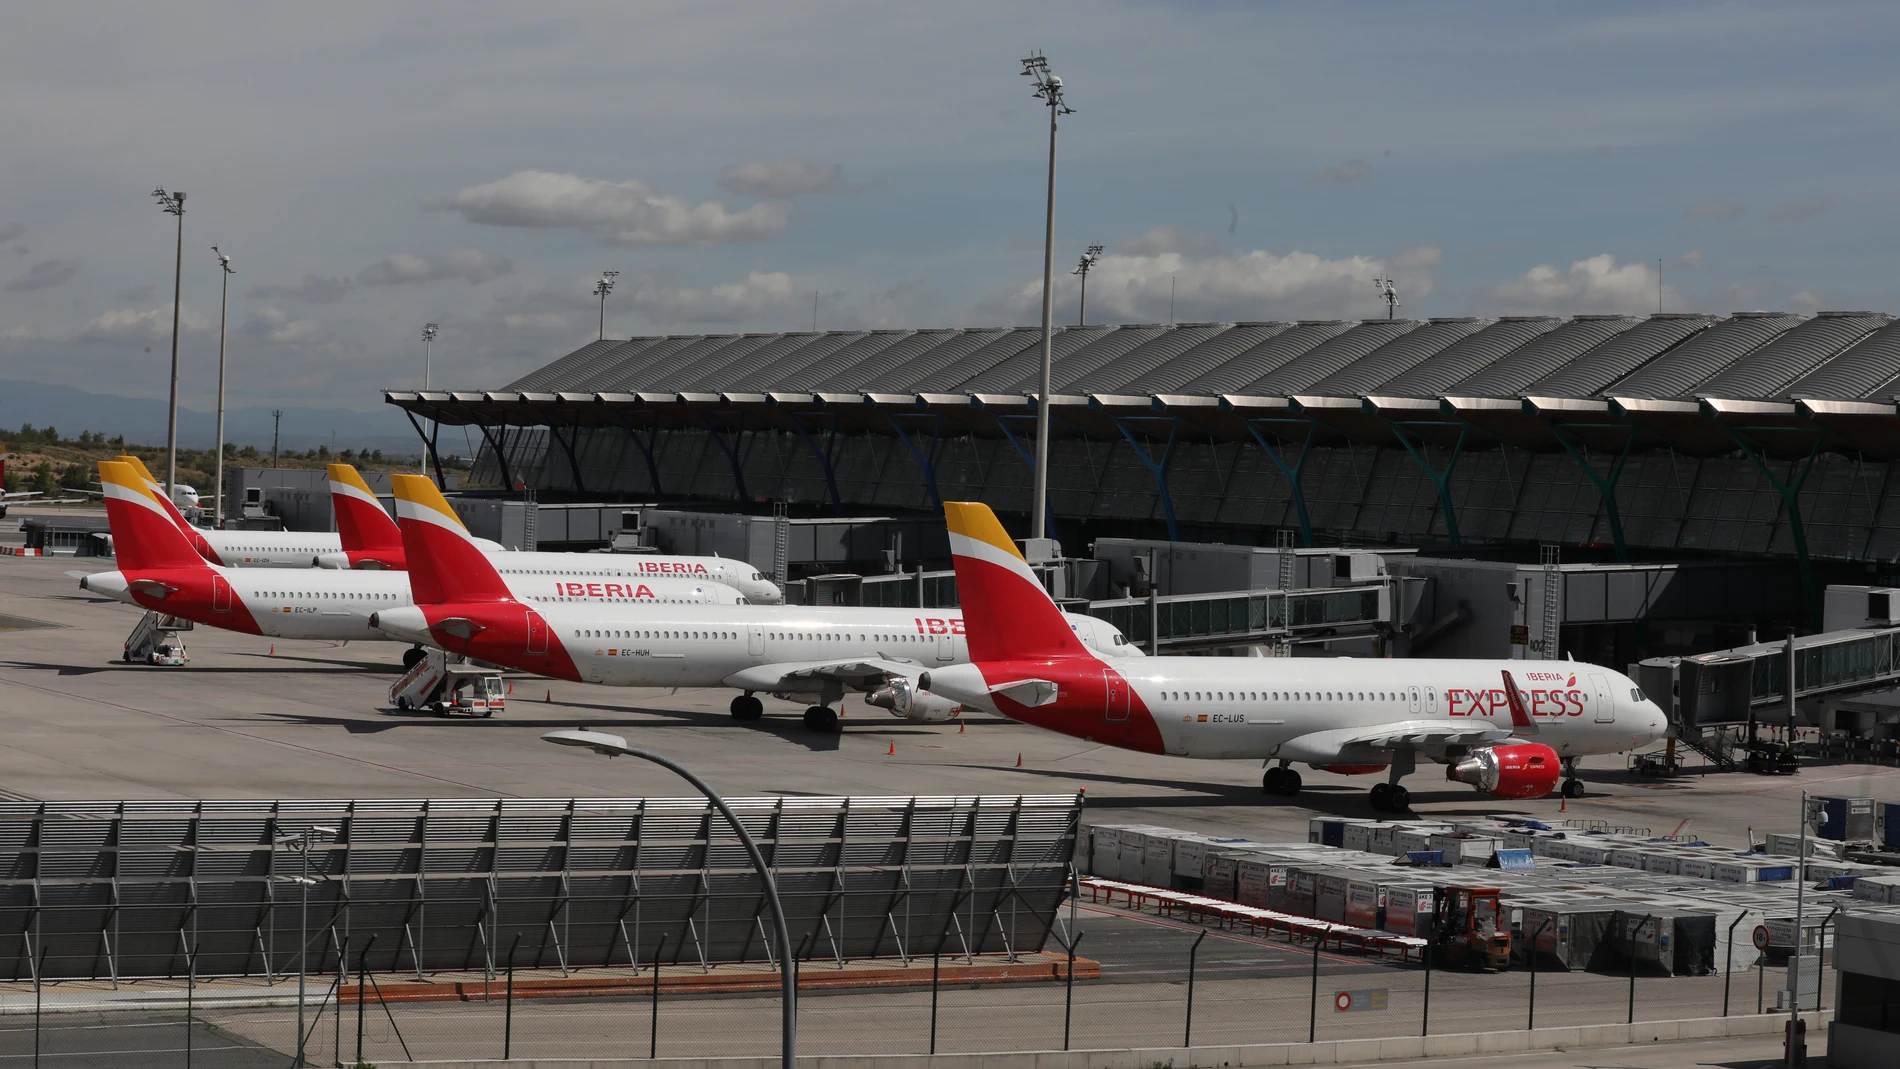 Aeropuerto de Madrid-Barajas Adolfo Suárez en el día 46 del estado de alarma